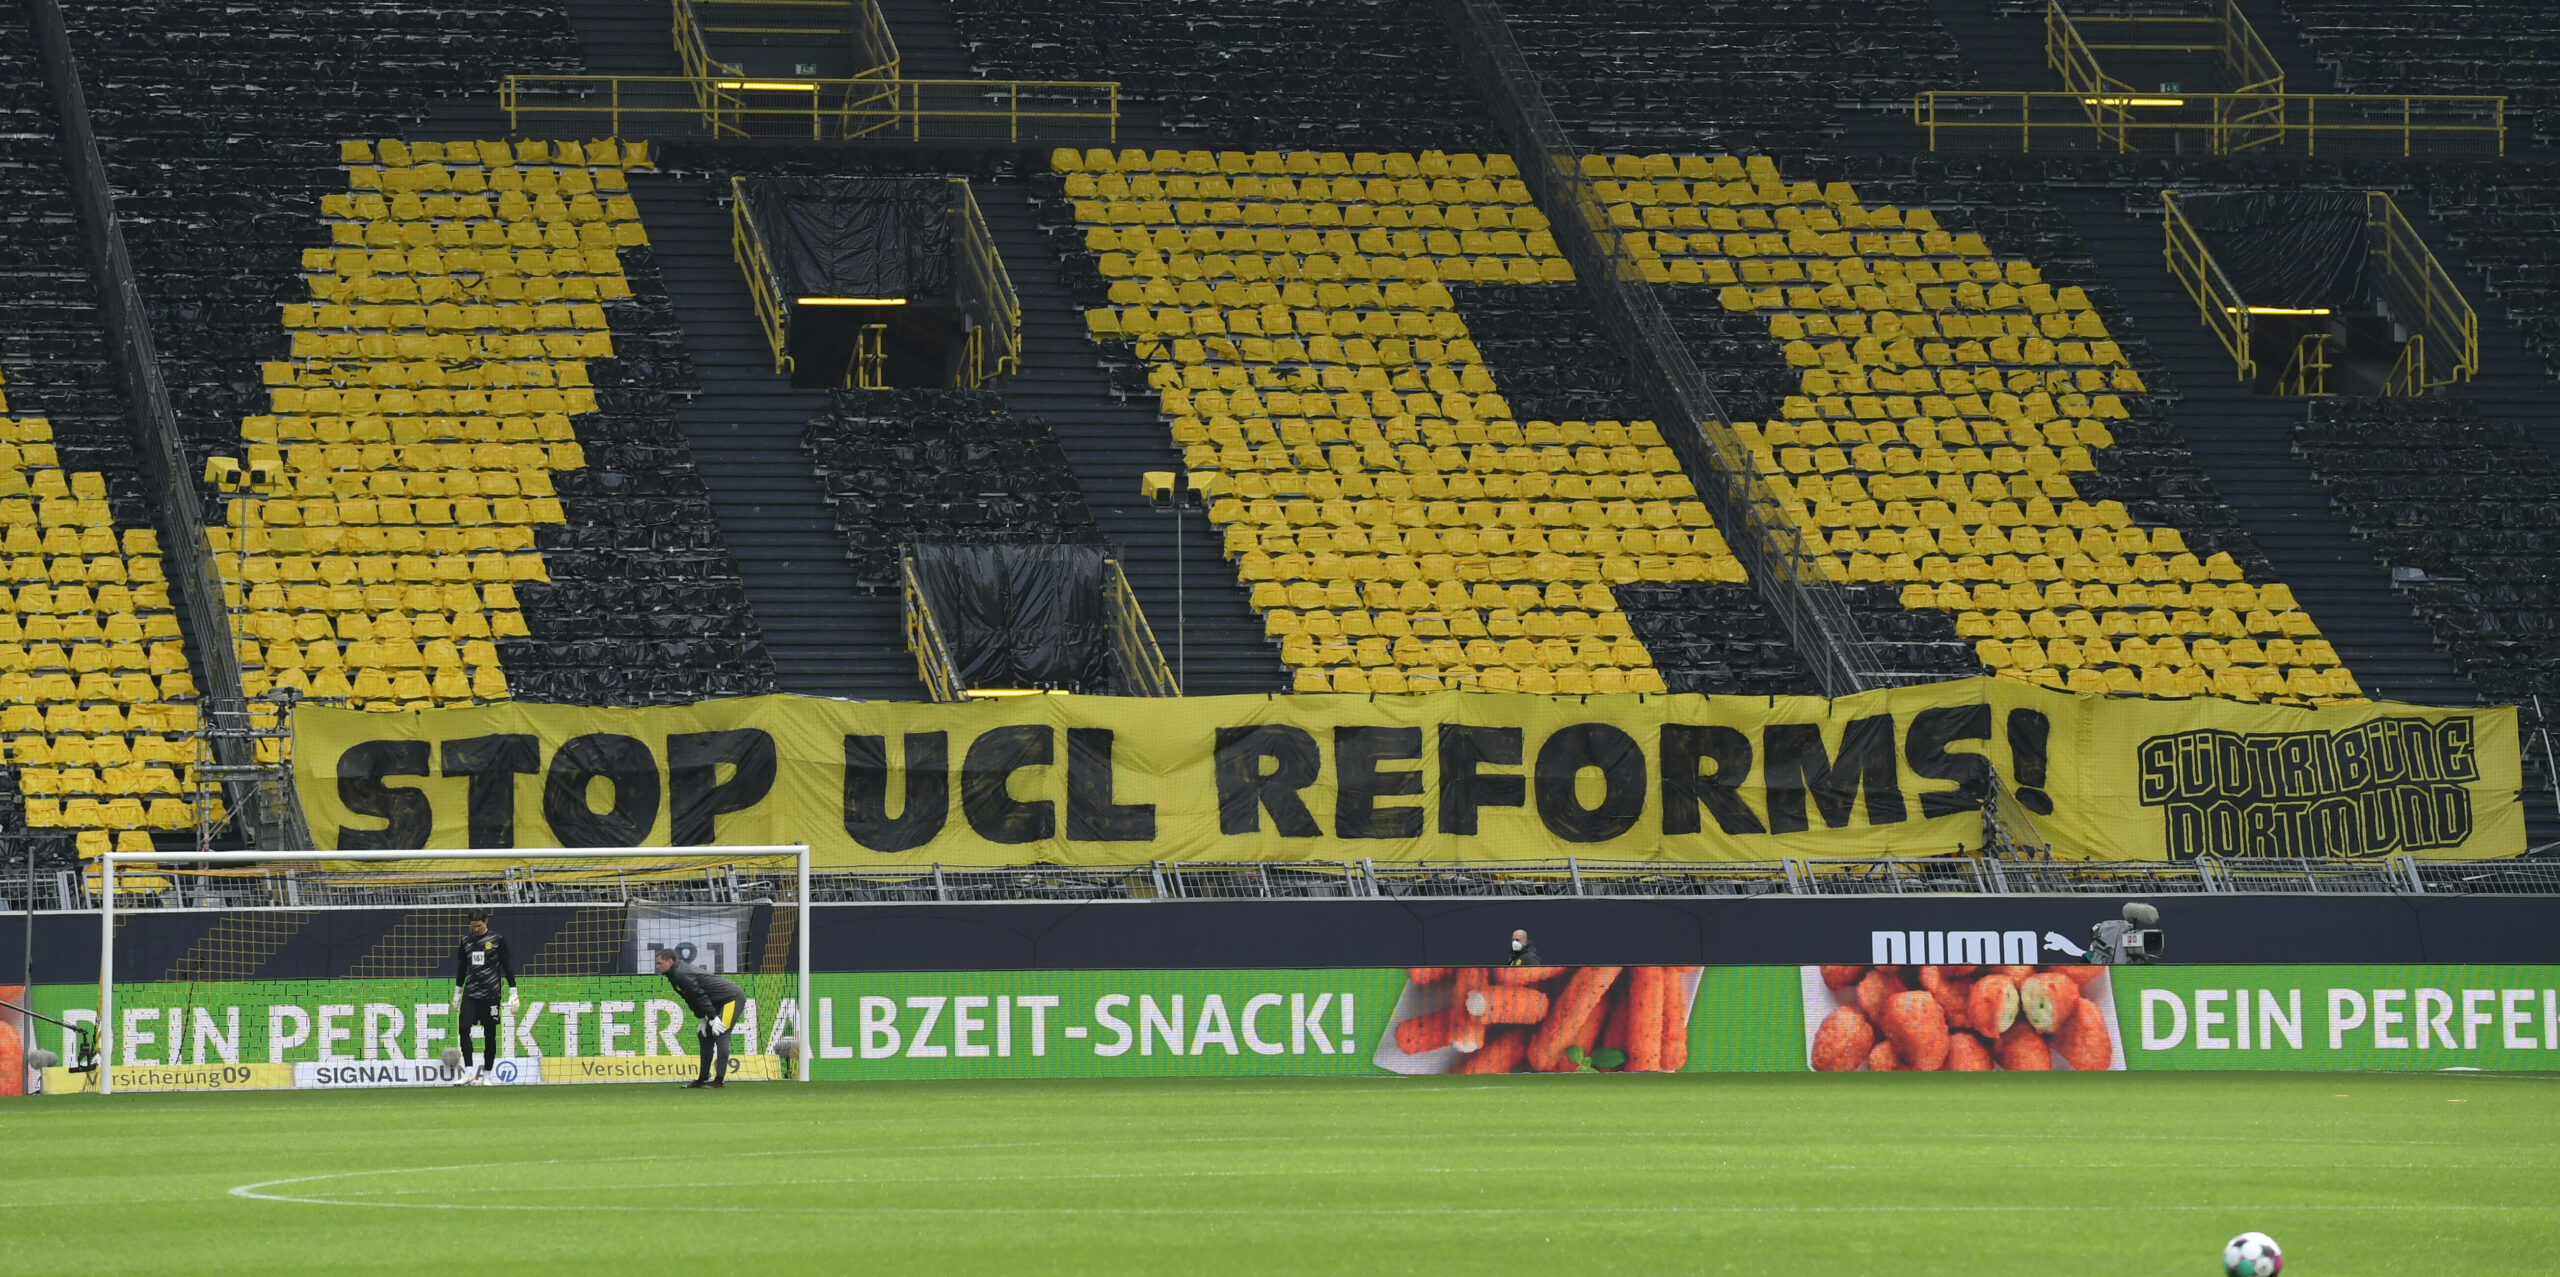 Nach Super-League-Scheitern: Druck auf UEFA zur Veränderung der CL-Reform wächst